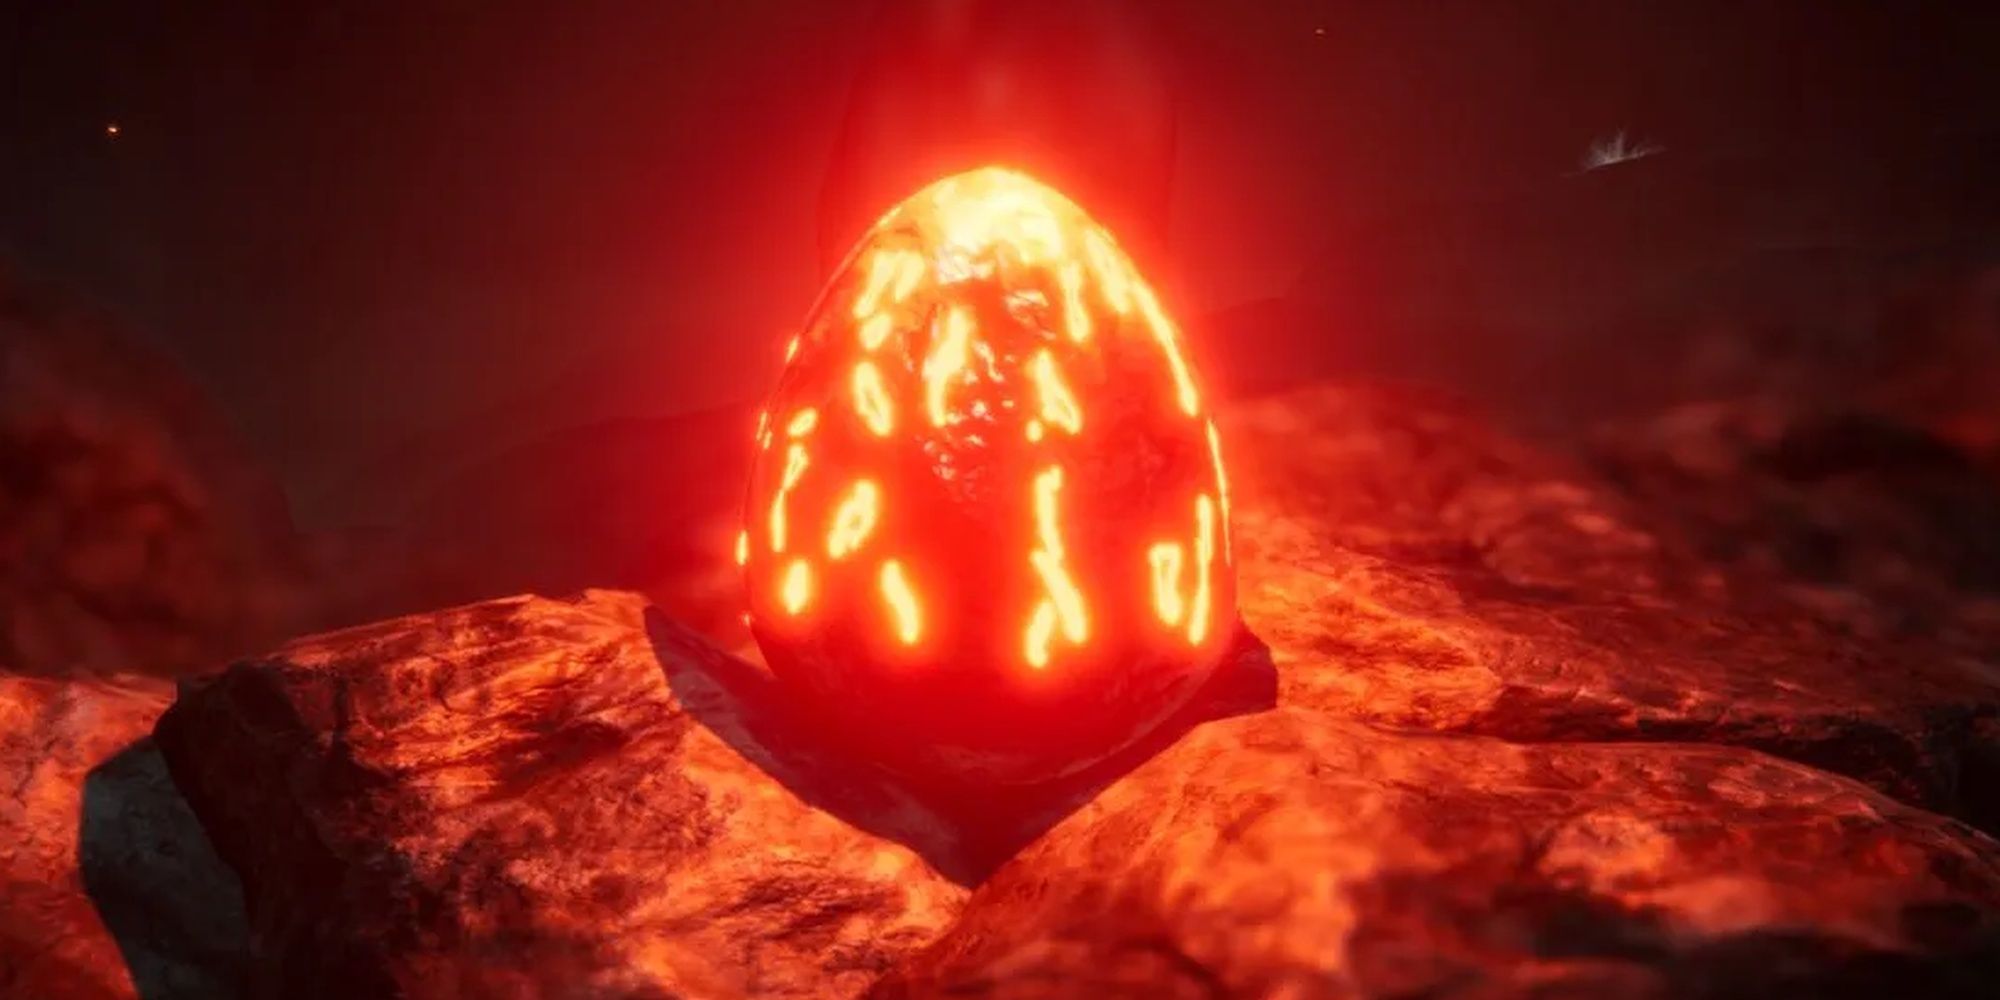 Choo-Choo Charles: The Red Egg In A Cave